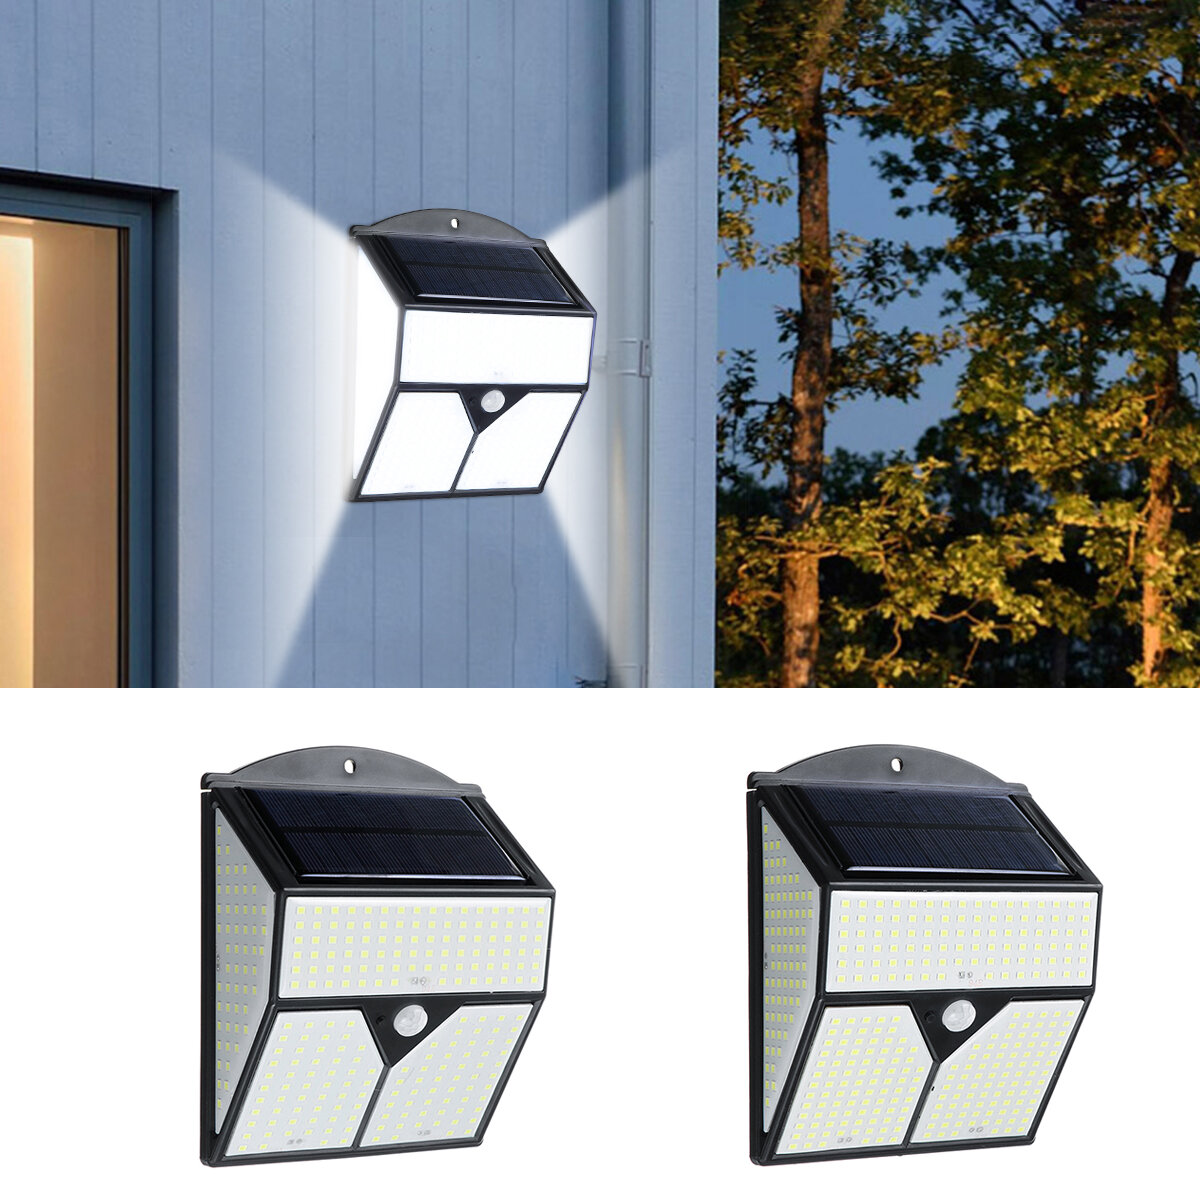 318/436 LED zonne-energie licht PIR Bewegingssensor buitenlamp muur waterdichte tuin